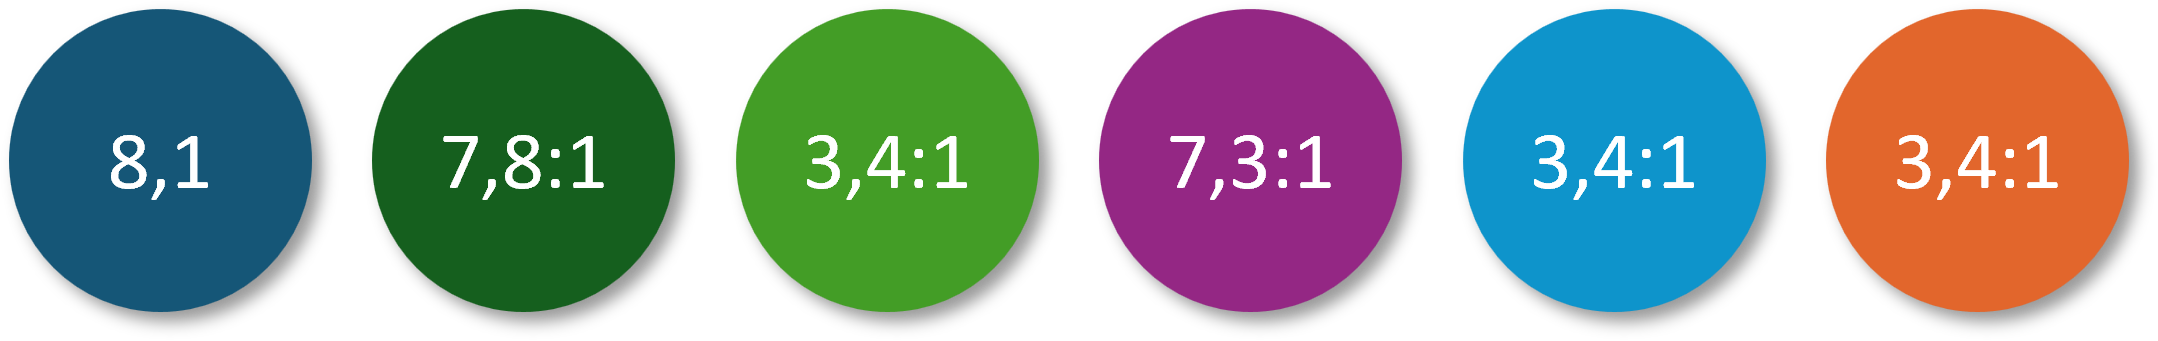 Punkte mit den sechs Akzentfarben der neuen Office-Designfarbpalette, in denen jeweils mit weißer Schrift die Kontrastwerte stehen: Diese liegen beim Dunkelblau bei 8,1, beim dunklen Grün bei 7,8:1, beim hellen Grün bei 3,4:1, beim Violett bei 7,3:1 und beim beim hellen Blau und Orange bei 3,4:1.